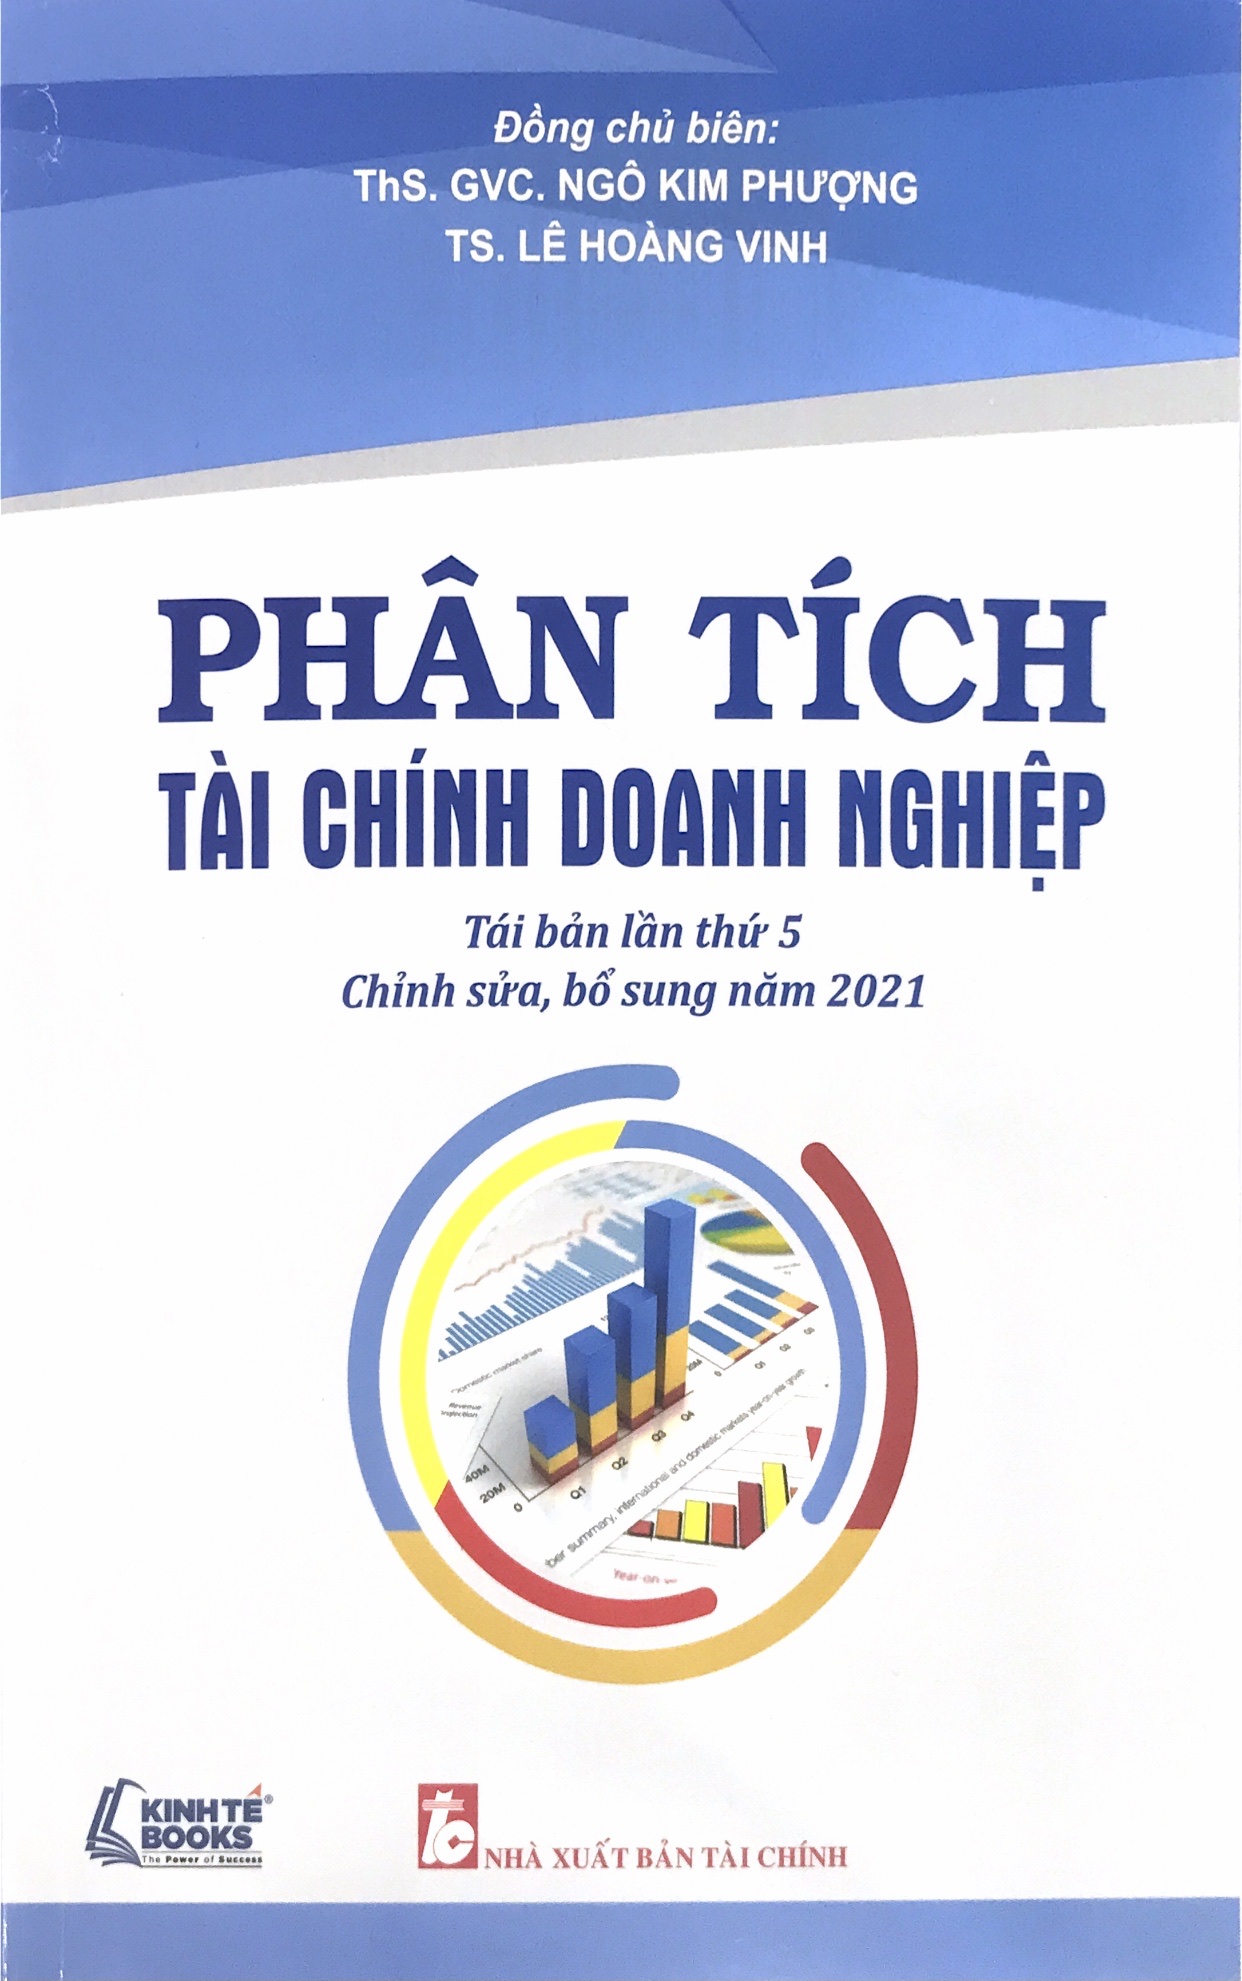 Phân tích tài chính doanh nghiệp Tai bản lần thứ 5 - chỉnh sửa bổ sung năm 2021 (Tái bản 2022)